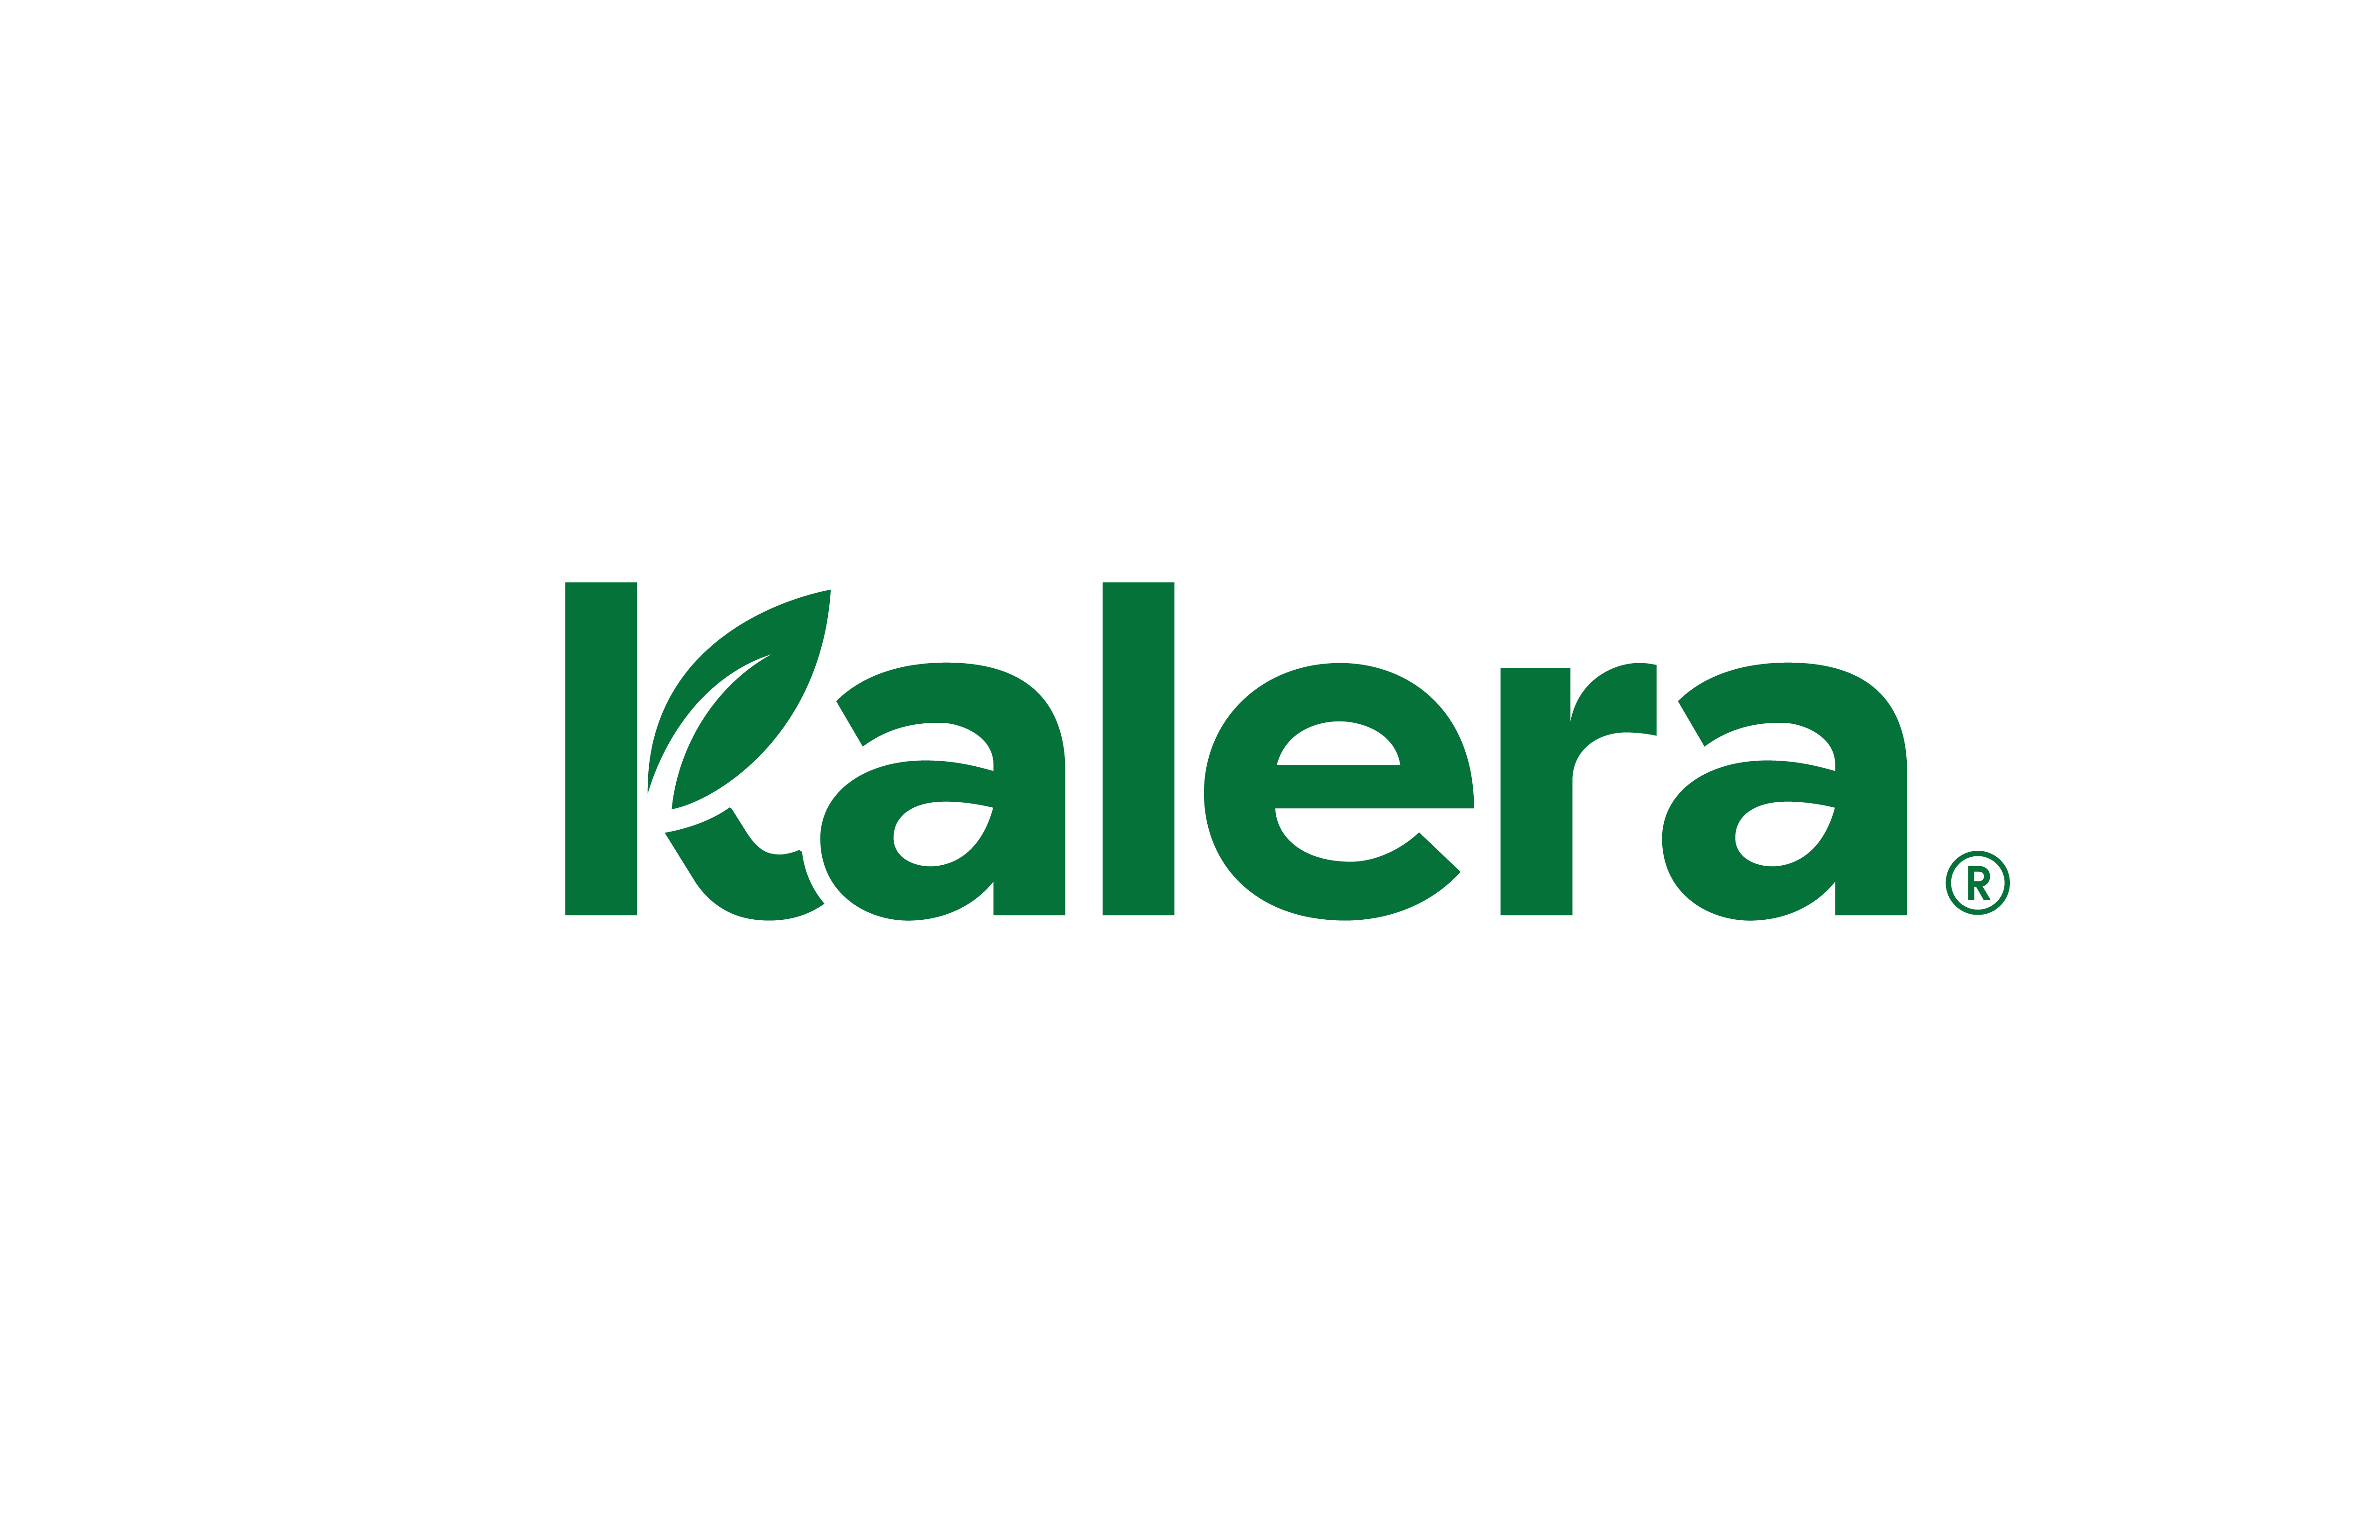 kalera_logo_green.png